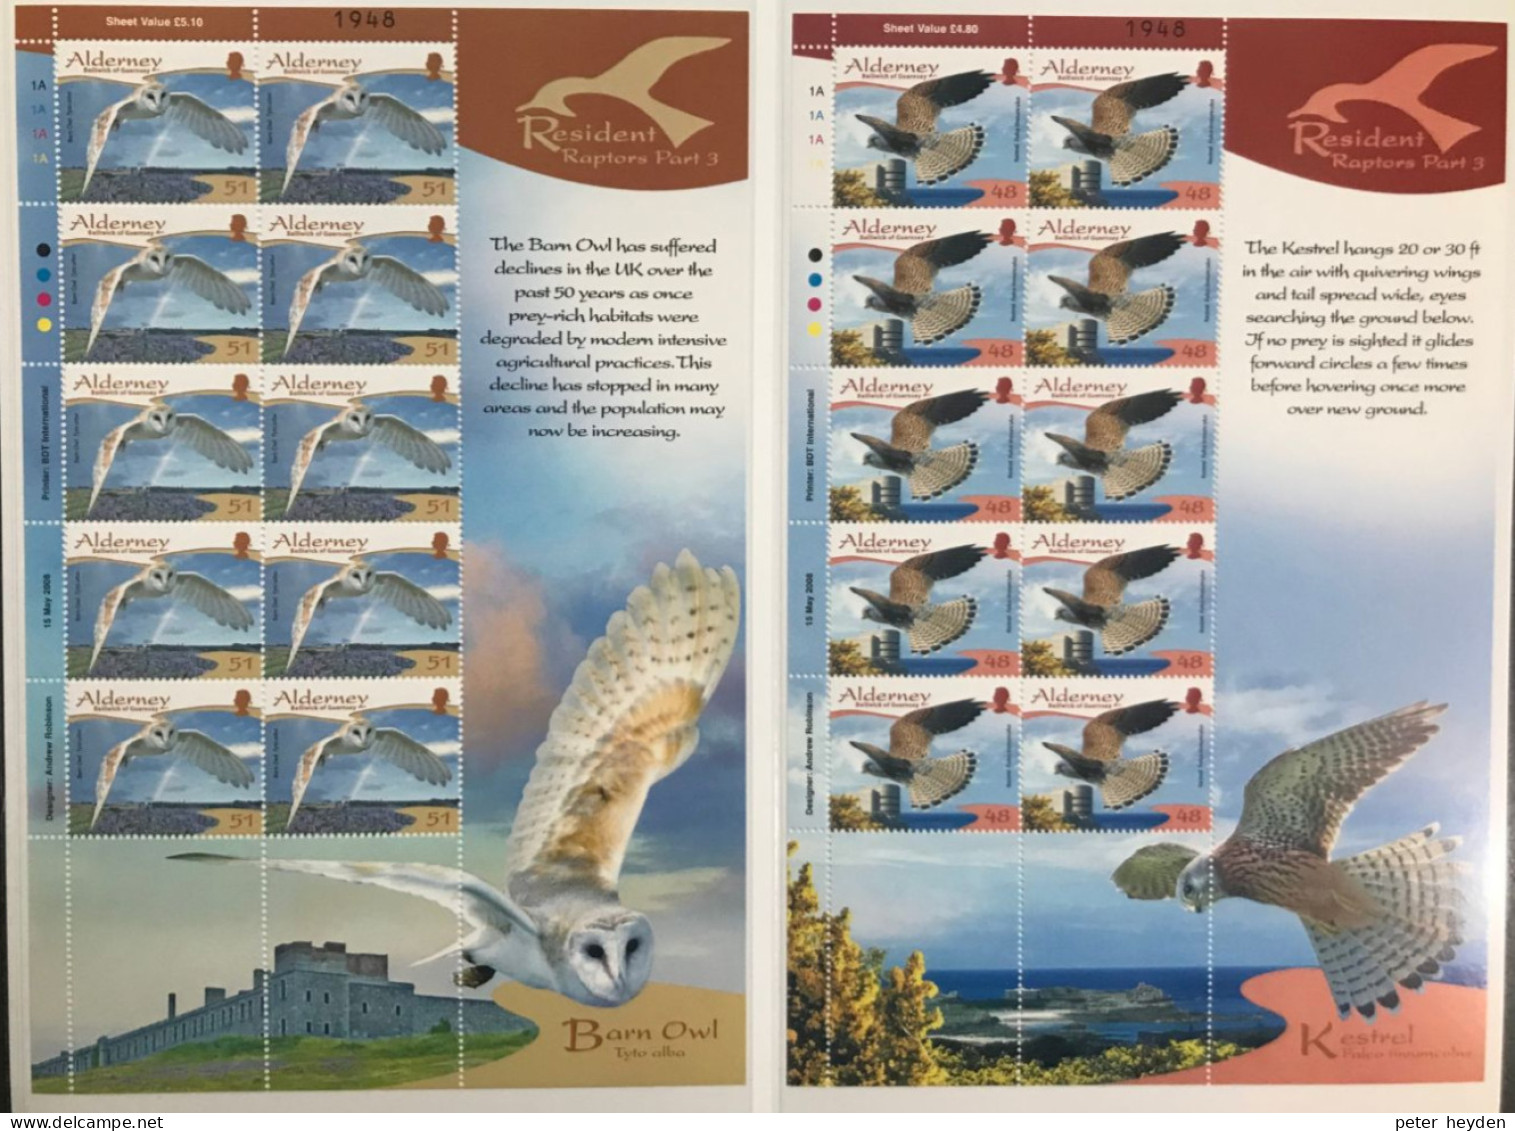 Alderney 2008 Resident Birds 3 Raptors ~ MNH 6 Sheetlets ~ Owl Kestrel Peregrine Falcon Buzzard Hawk - Alderney